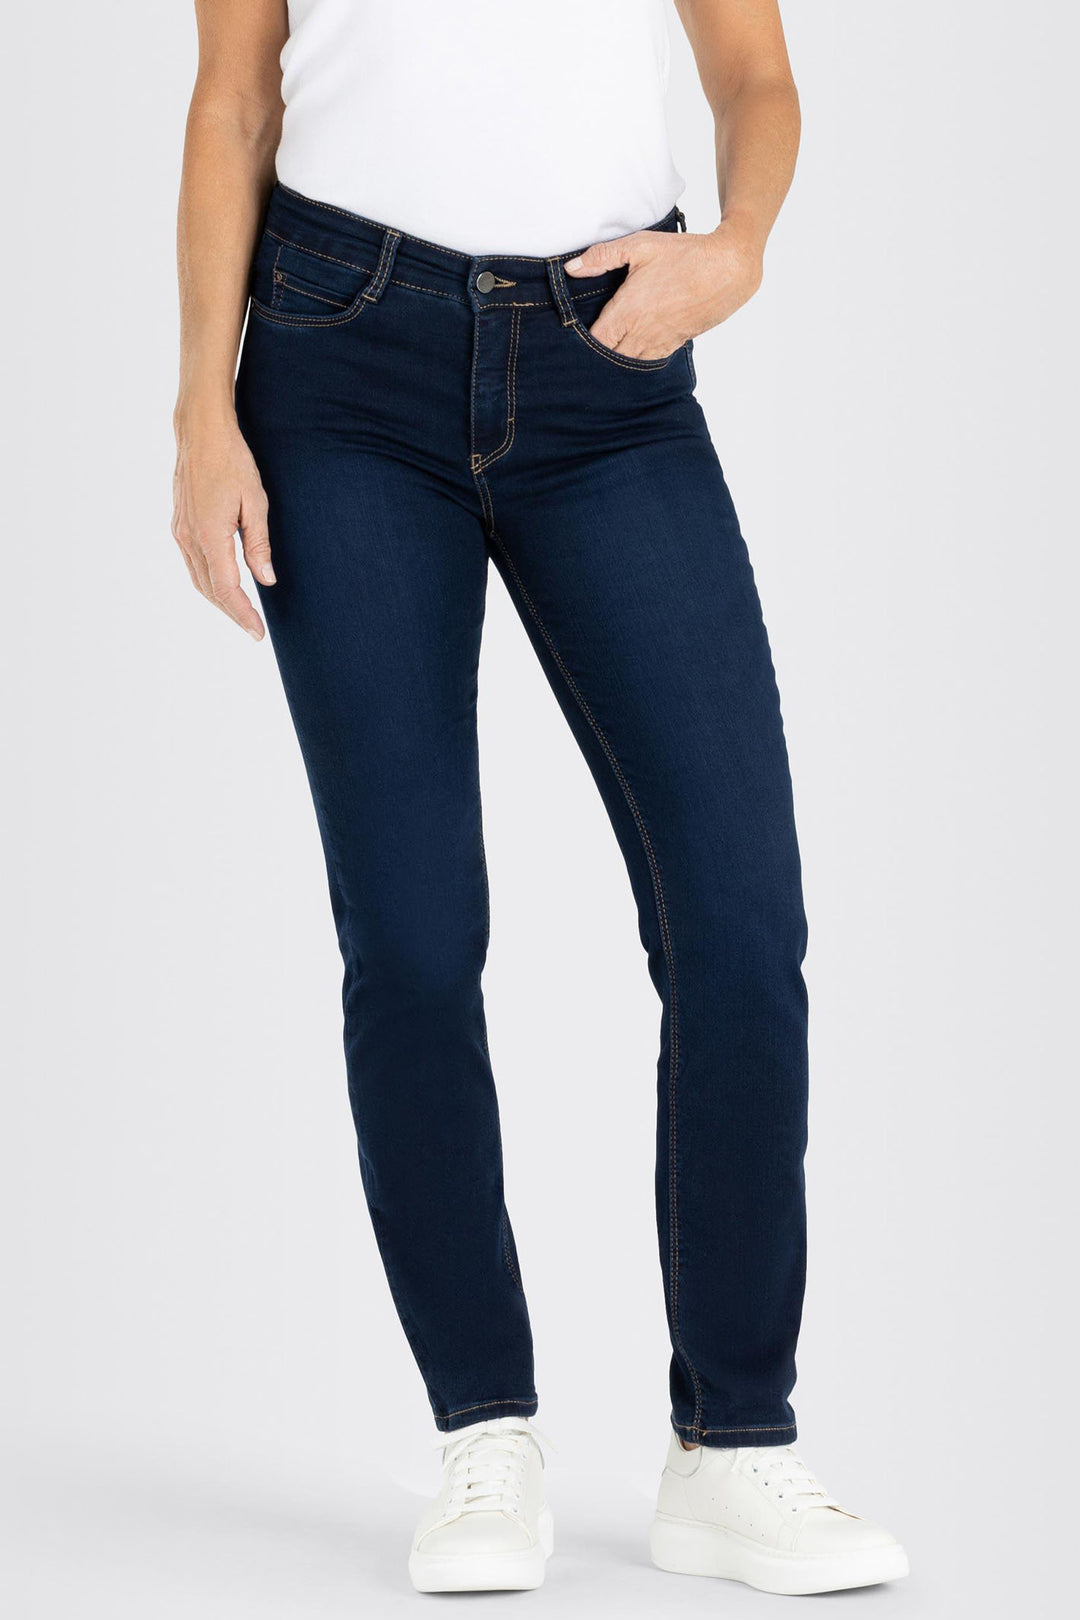 Mac 5401-90 0355L D826 Dream Denim Dark Washed Jeans - Olivia Grace Fashion